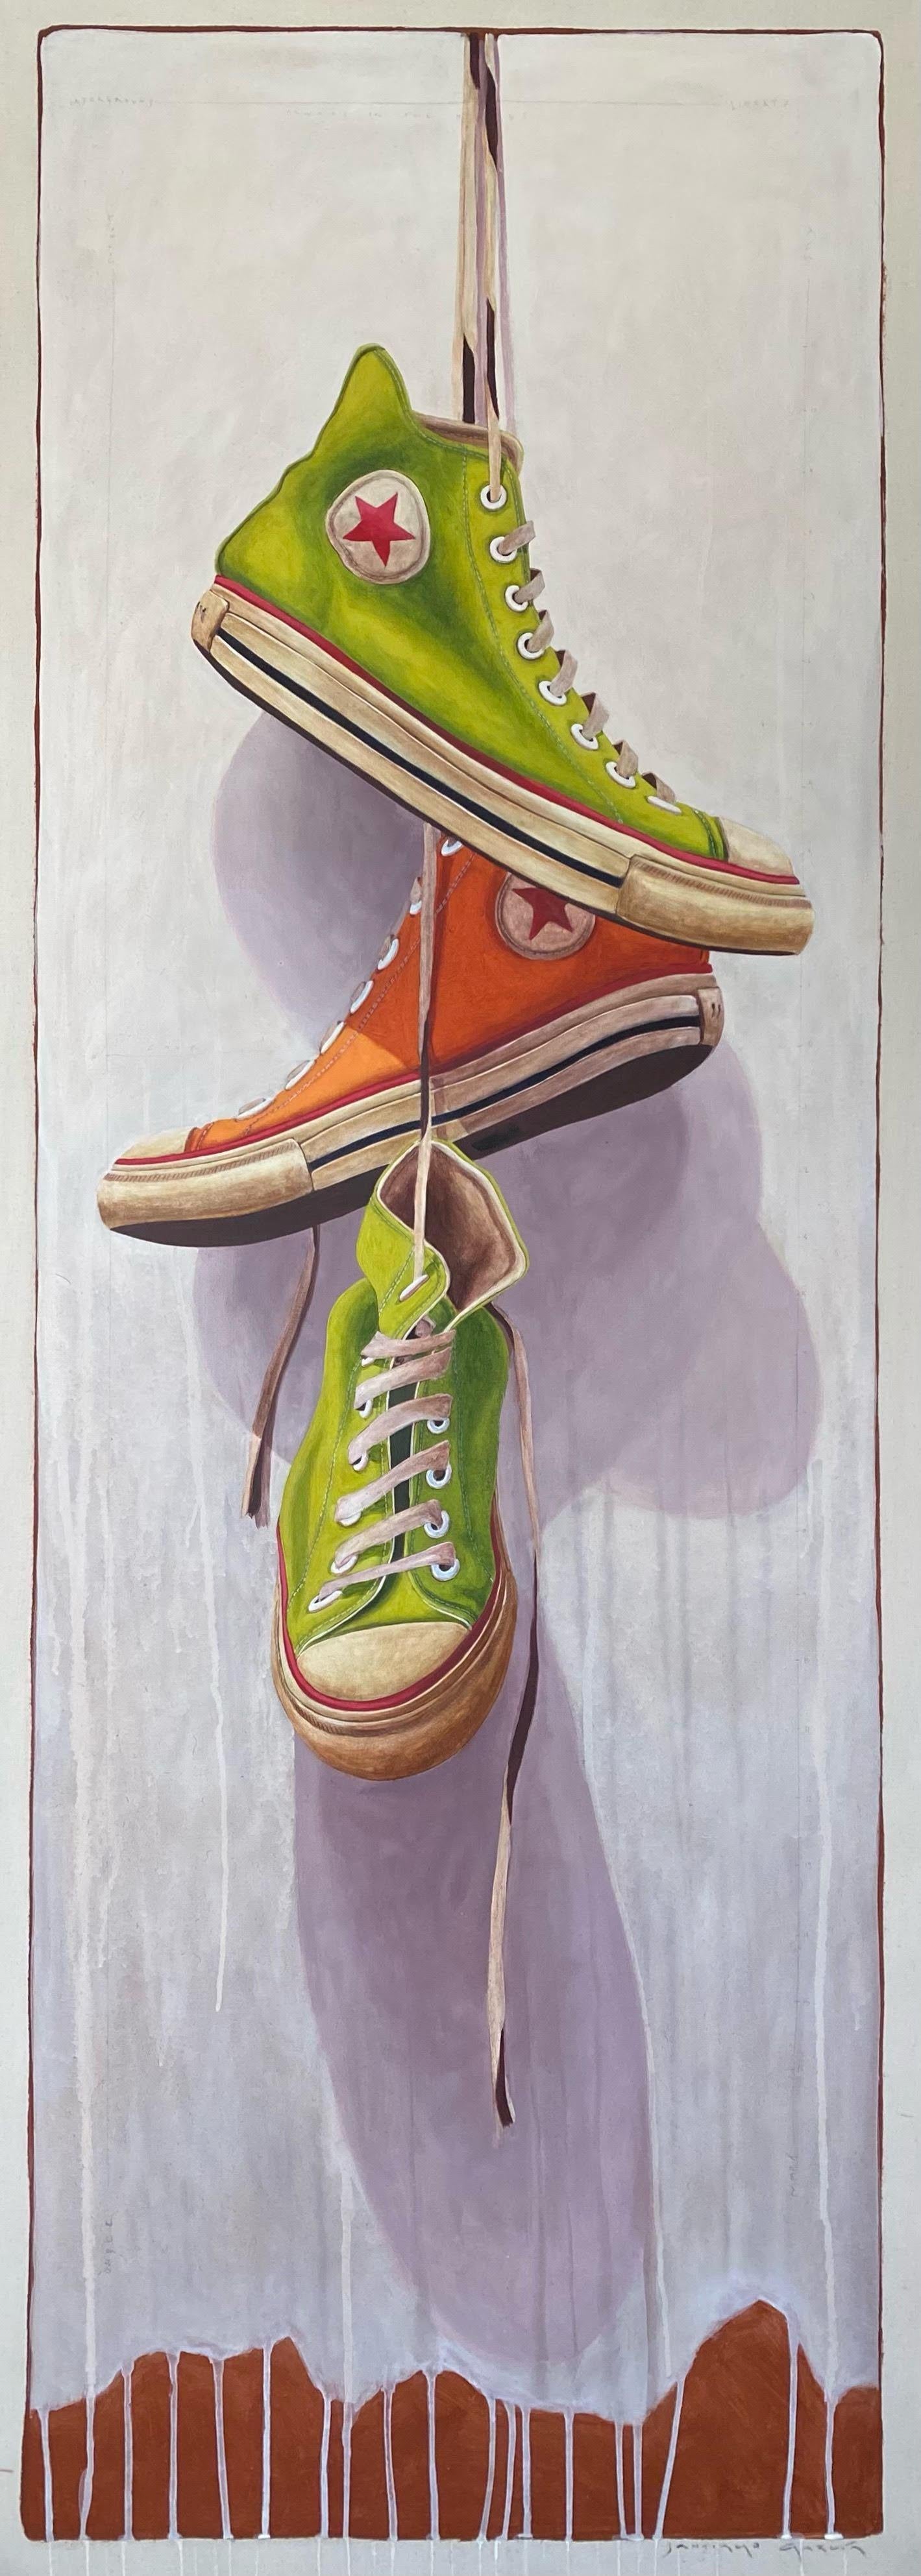 Peinture à l'huile « n°1411 » représentant des baskets converses vertes et oranges accrochées à leur dentelle